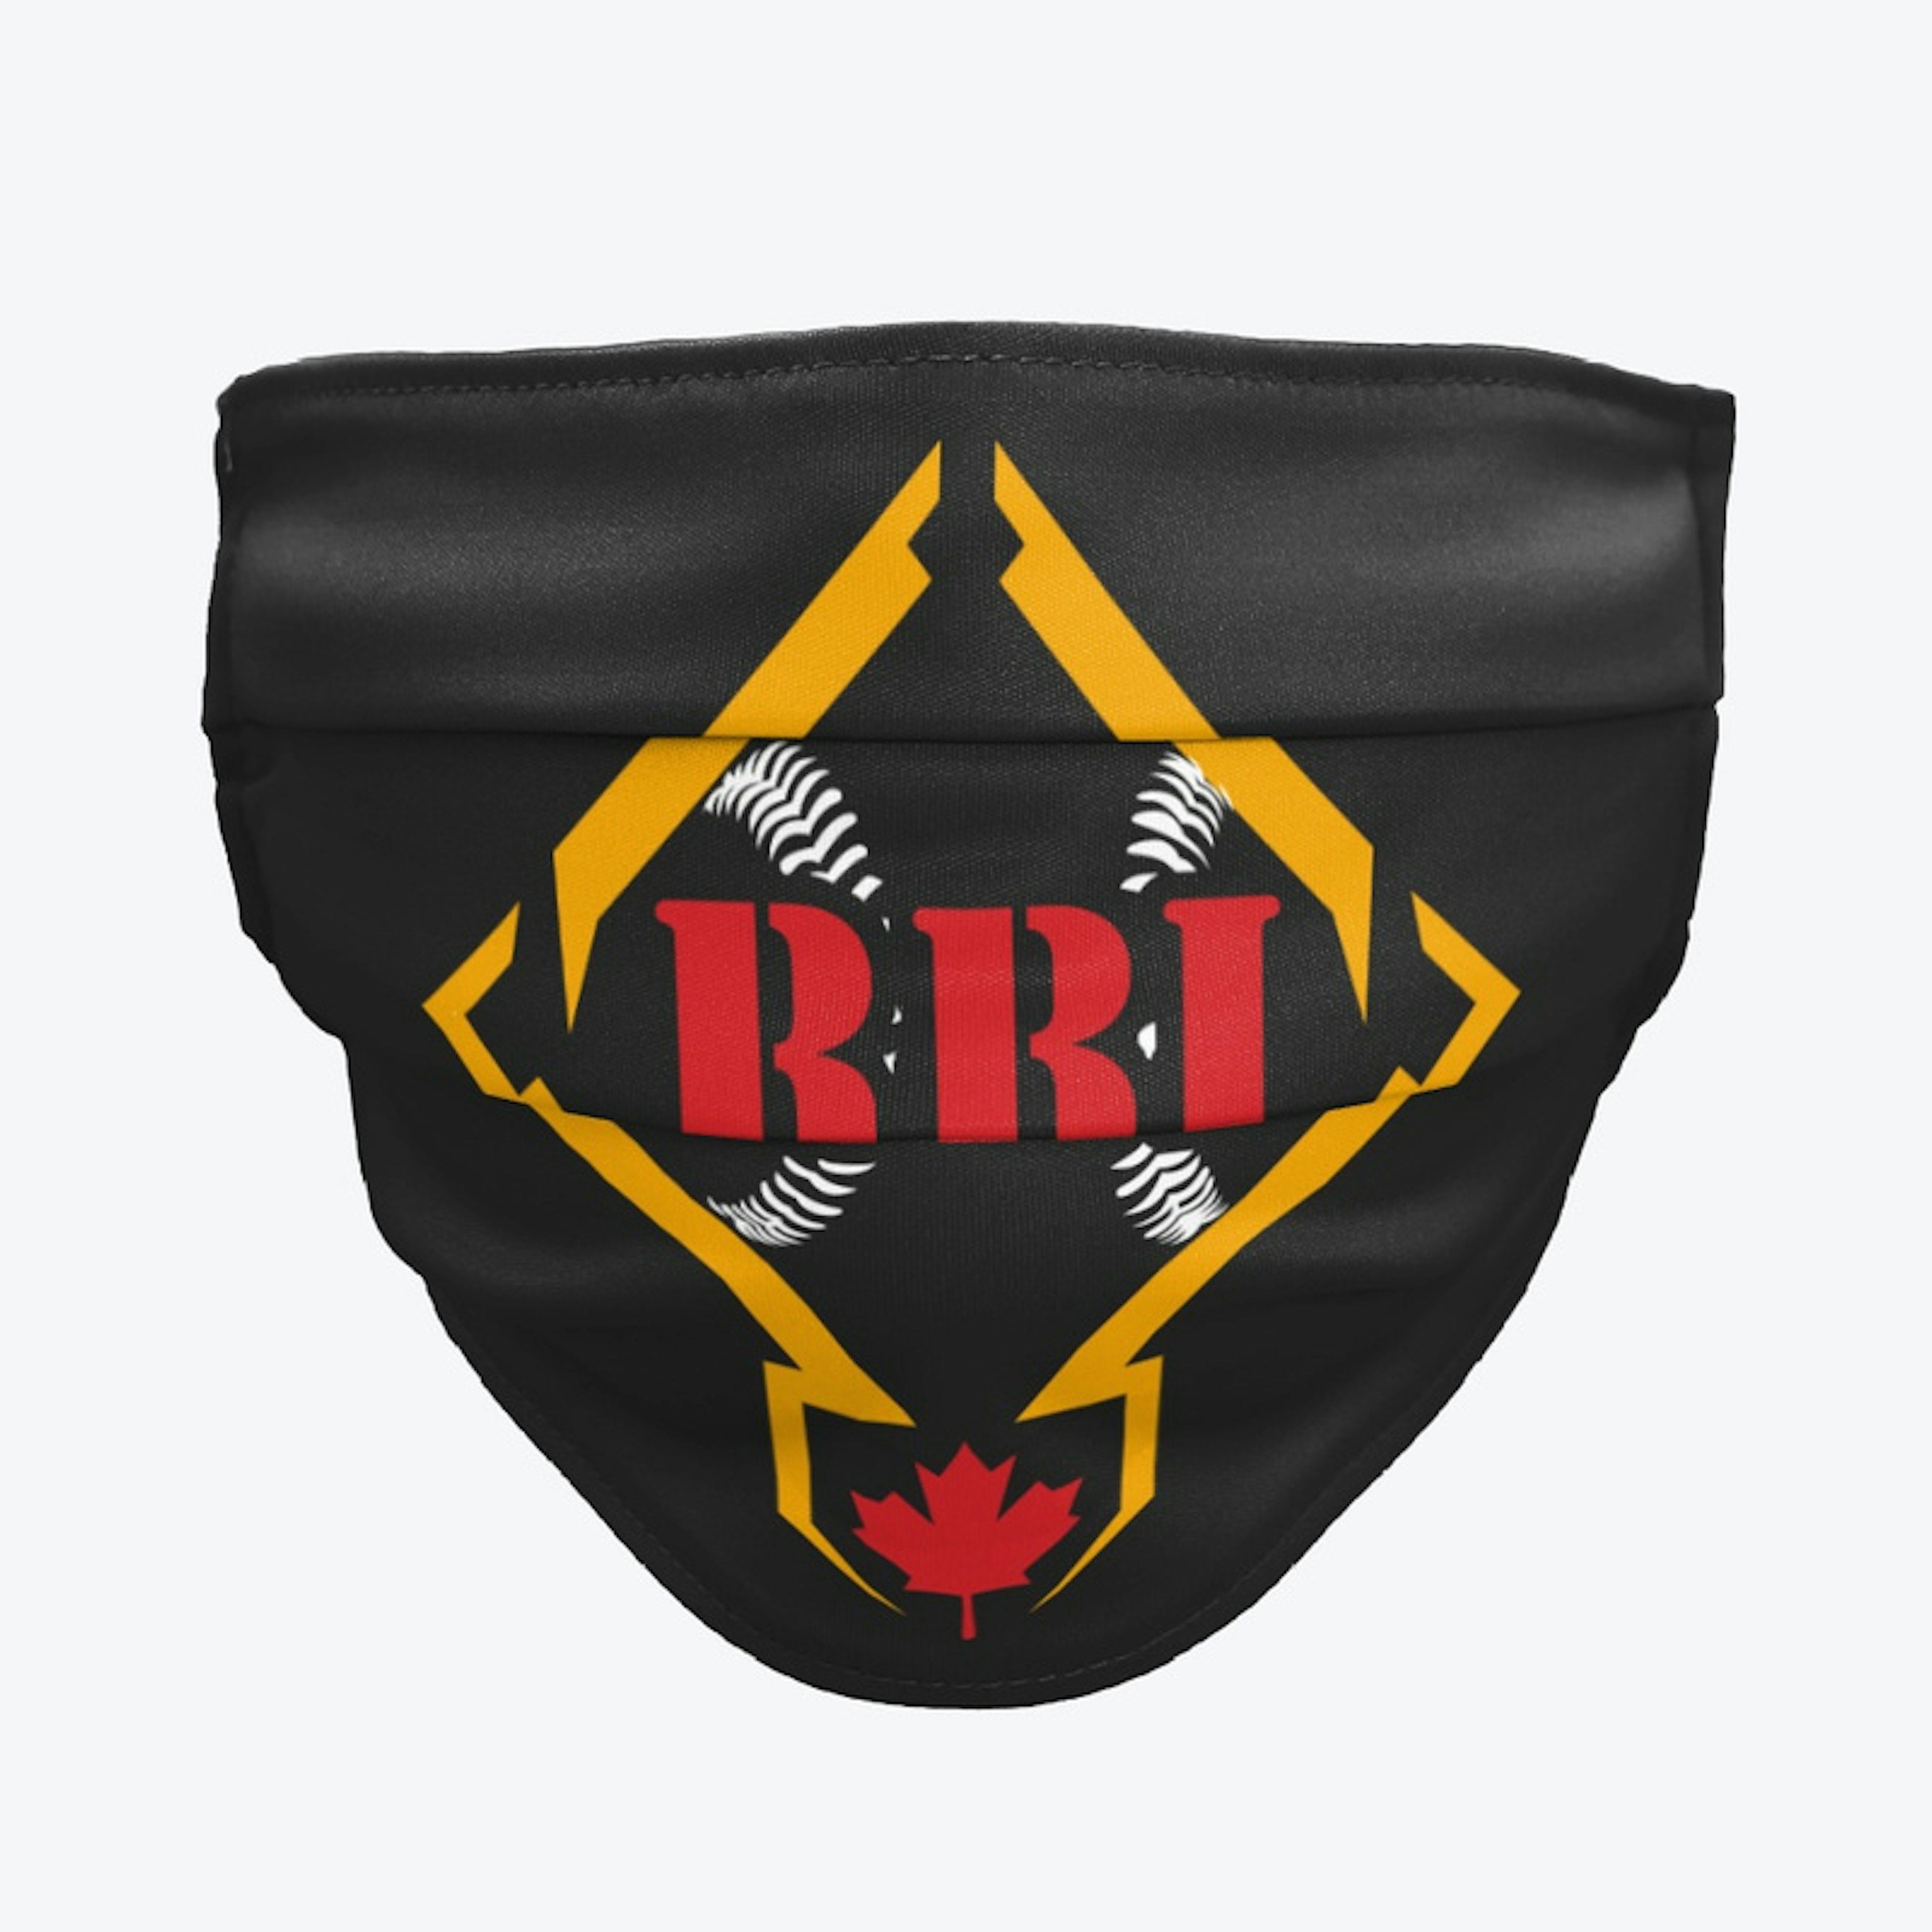 RBI Logo Design - White